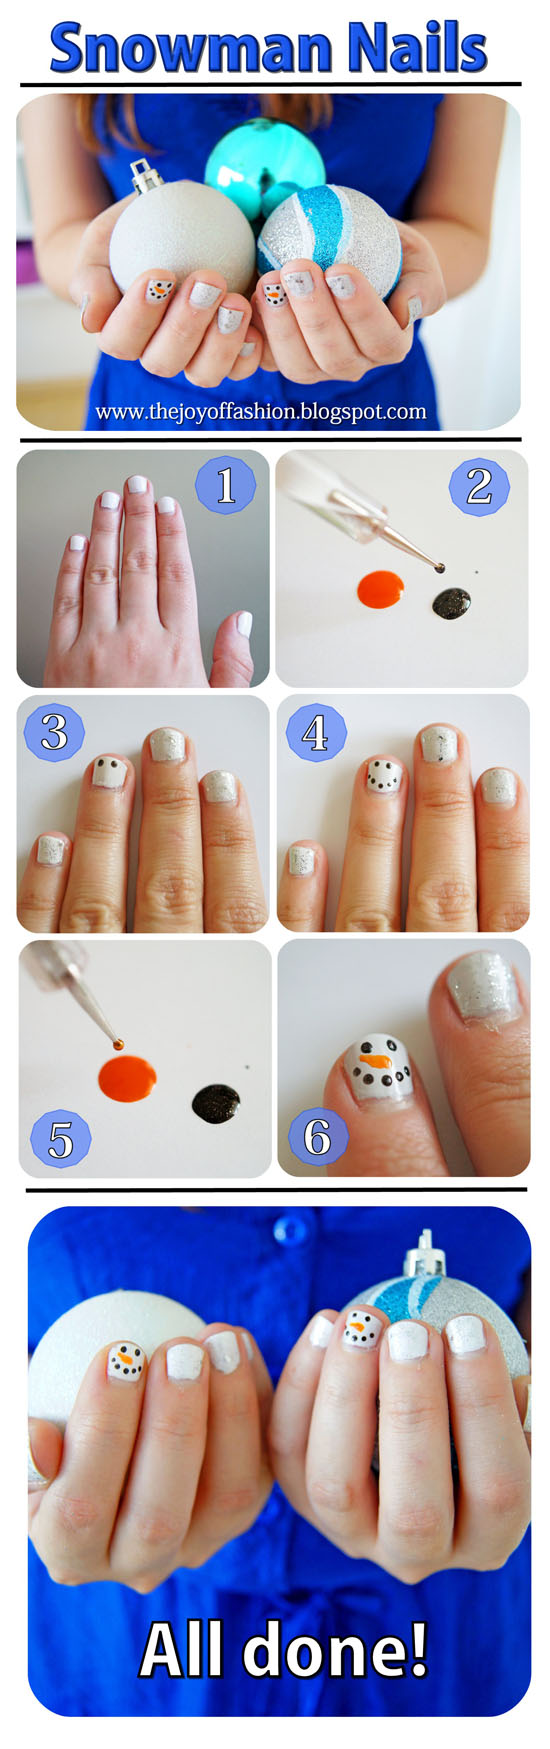 12 Dec - Snowman Nails - Small